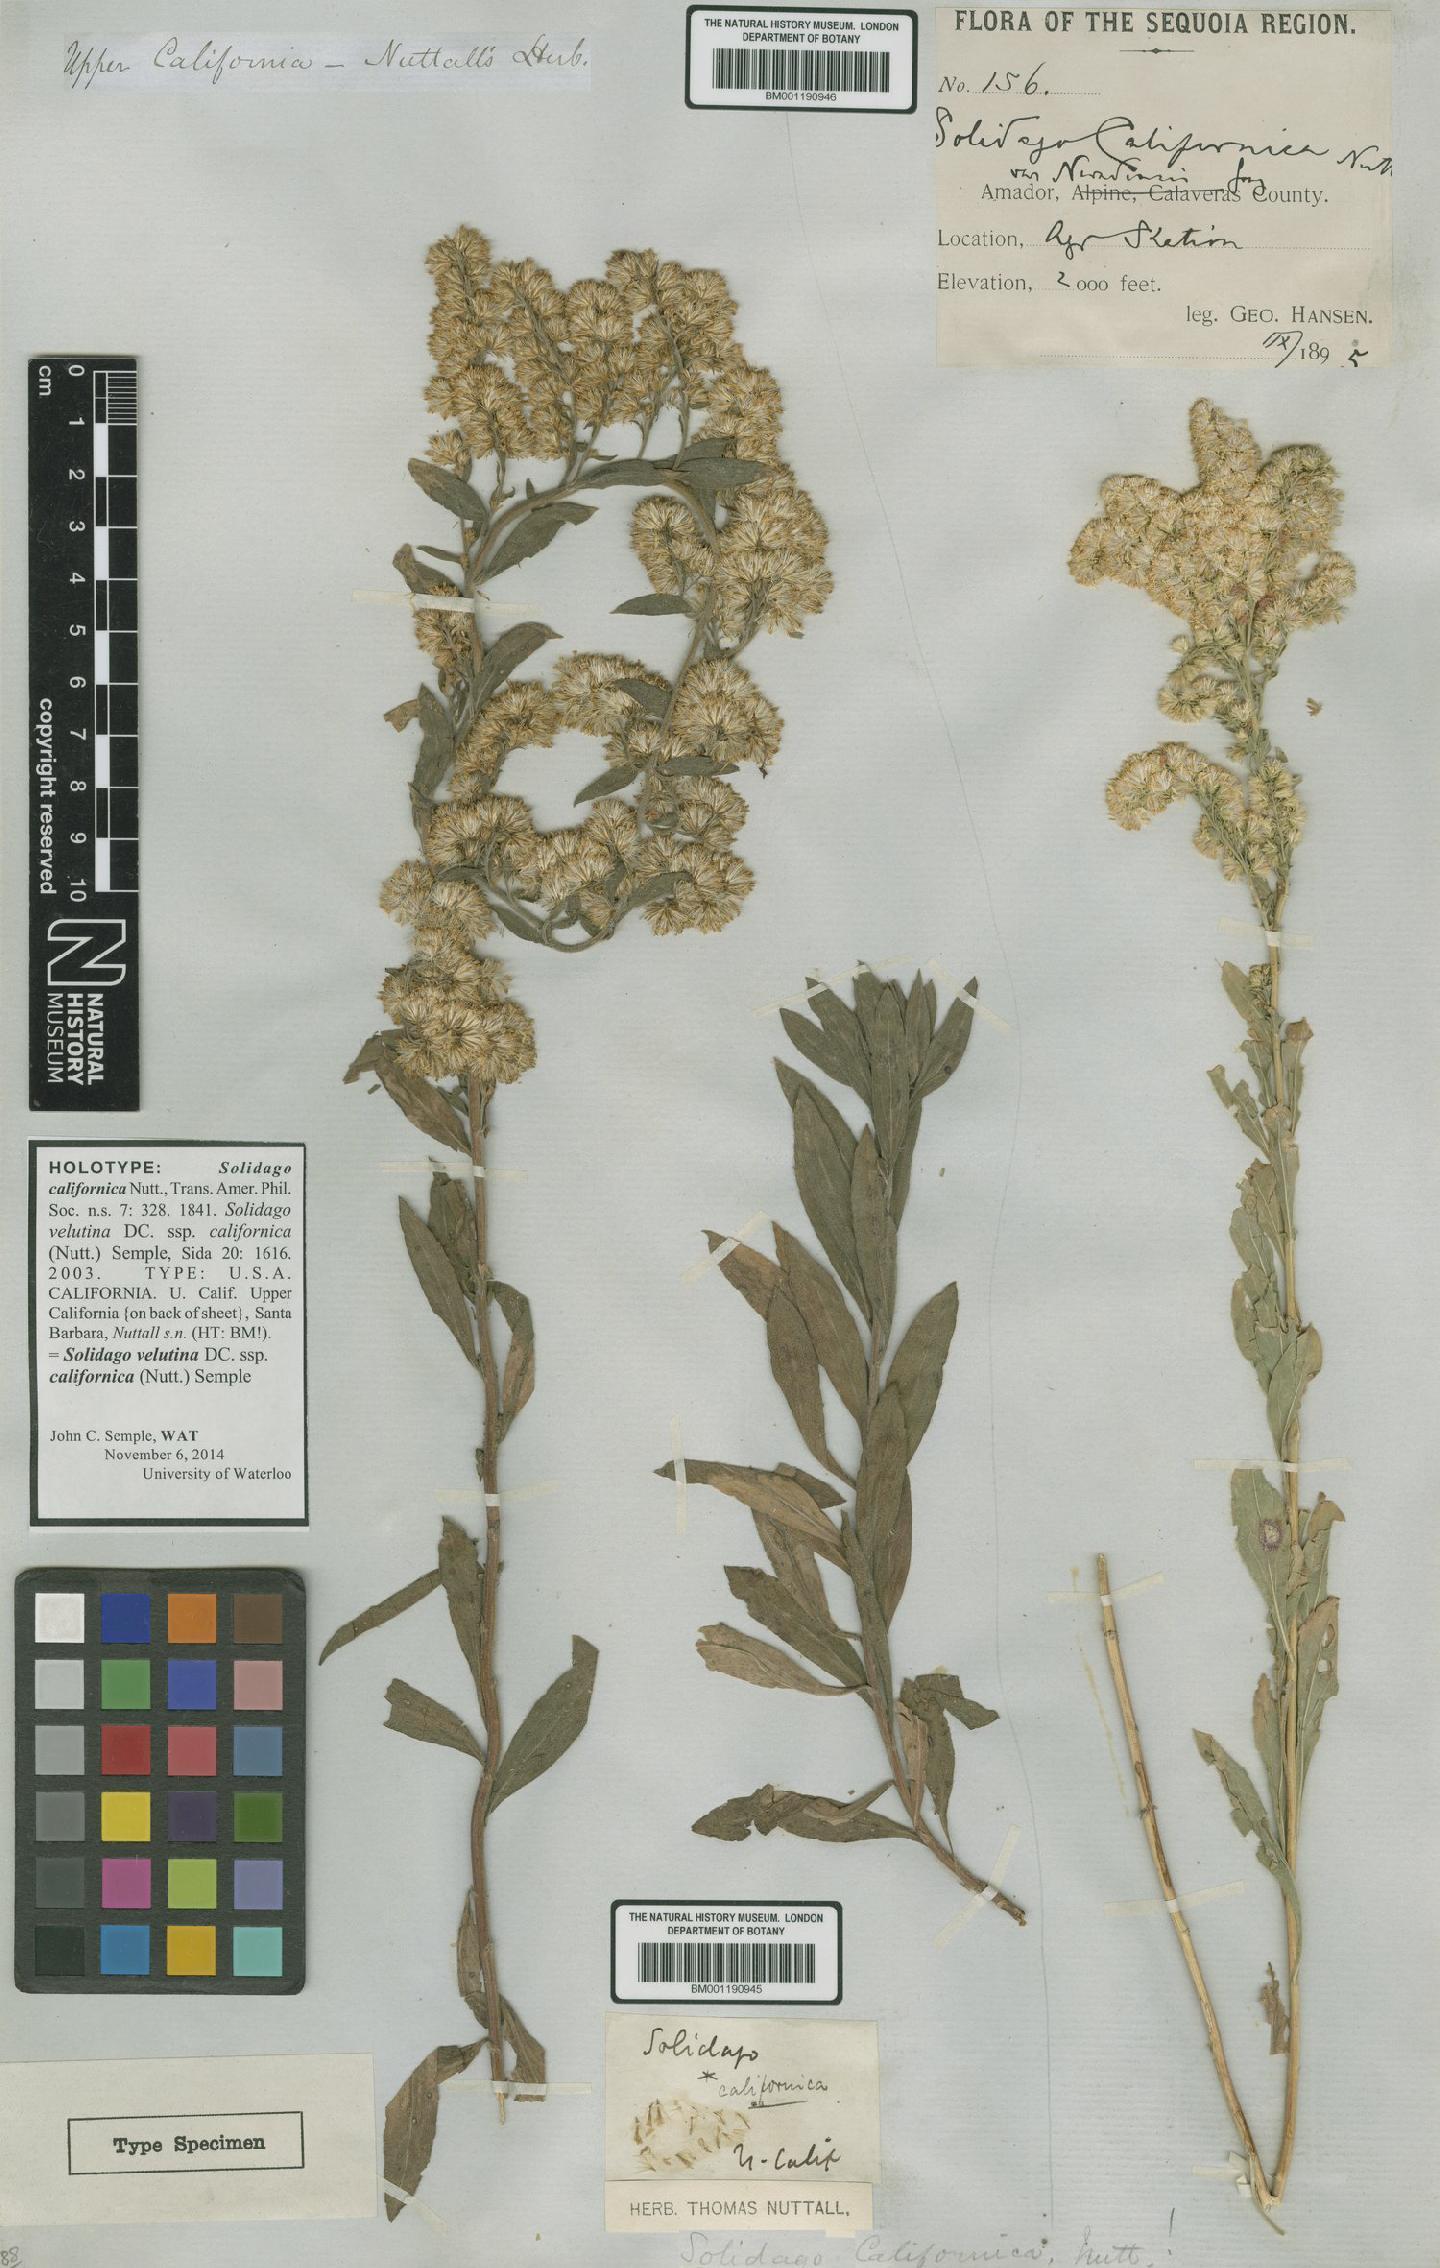 To NHMUK collection (Solidago velutina subsp. californica (Nutt.) Semple; NHMUK:ecatalogue:5591906)